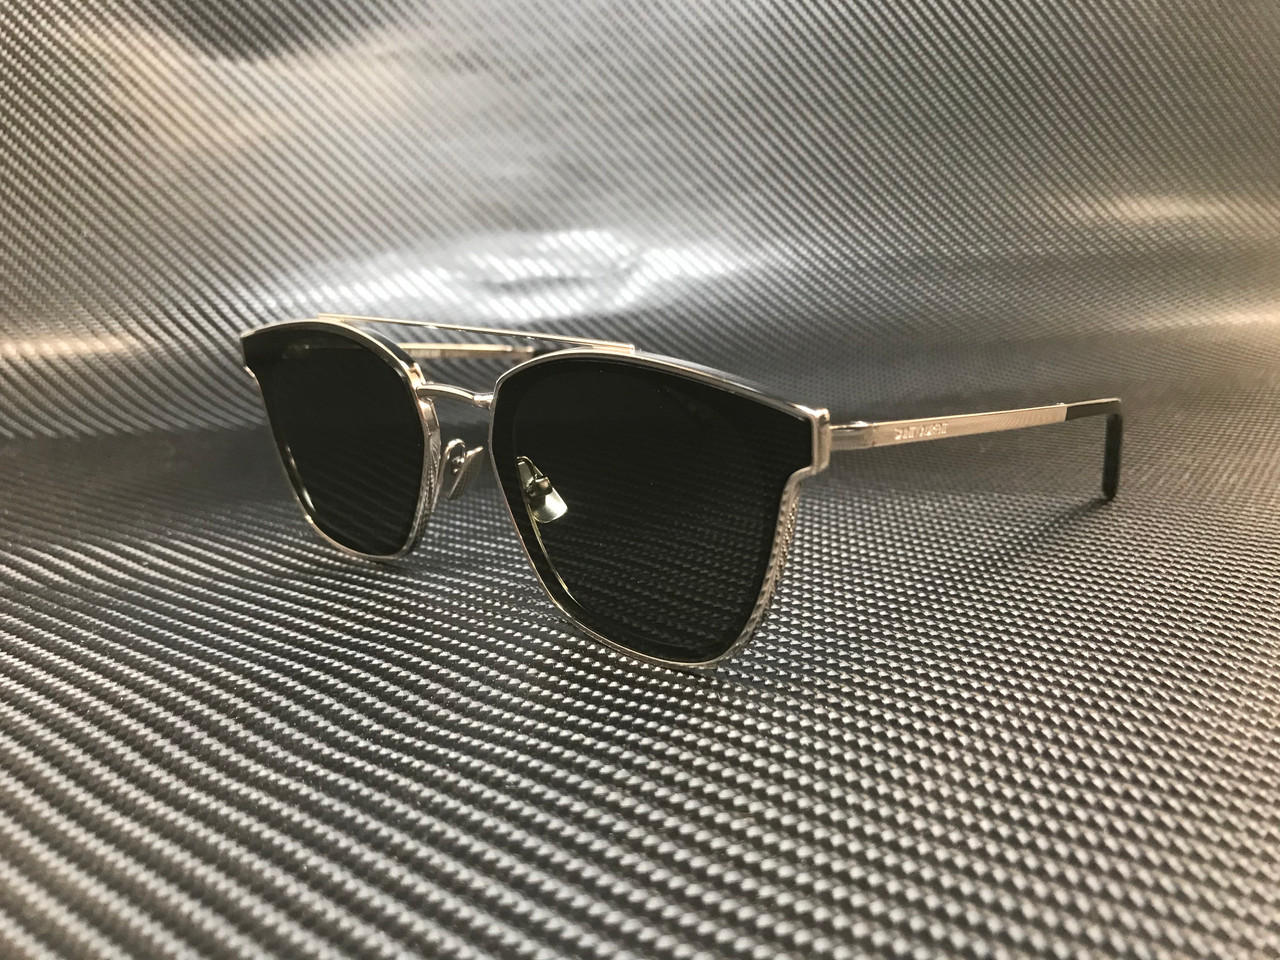 Saint Laurent Sunglasses SL 28 Slim 001 Black